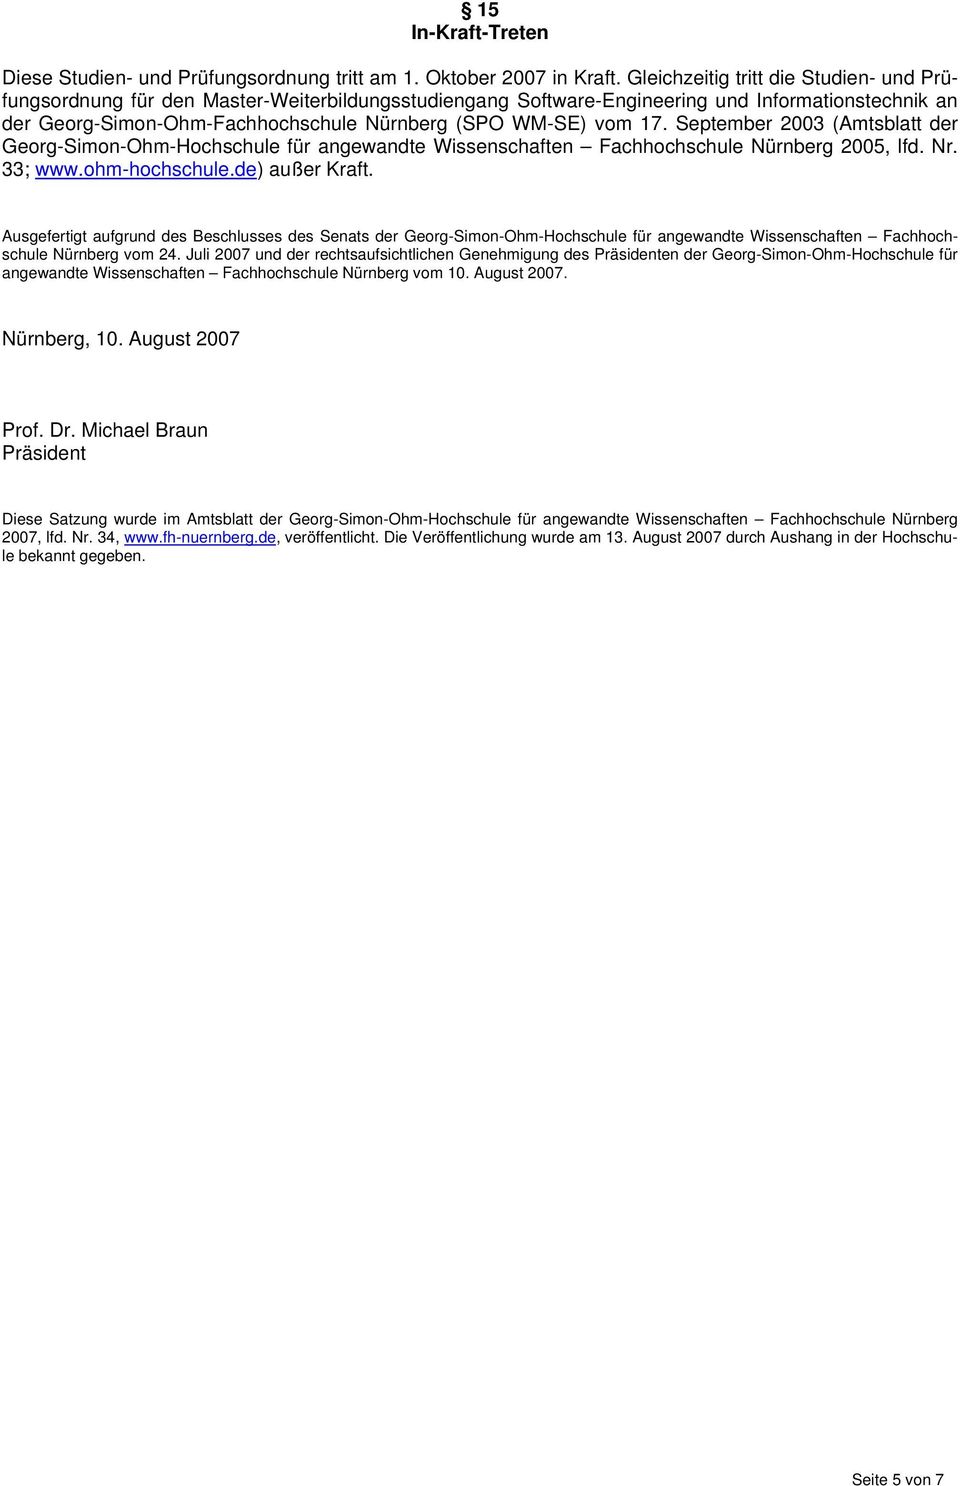 vom 17. September 2003 (Amtsblatt der Georg-Simon-Ohm-Hochschule für angewandte Wissenschaften Fachhochschule Nürnberg 2005, lfd. Nr. 33; www.ohm-hochschule.de) außer Kraft.